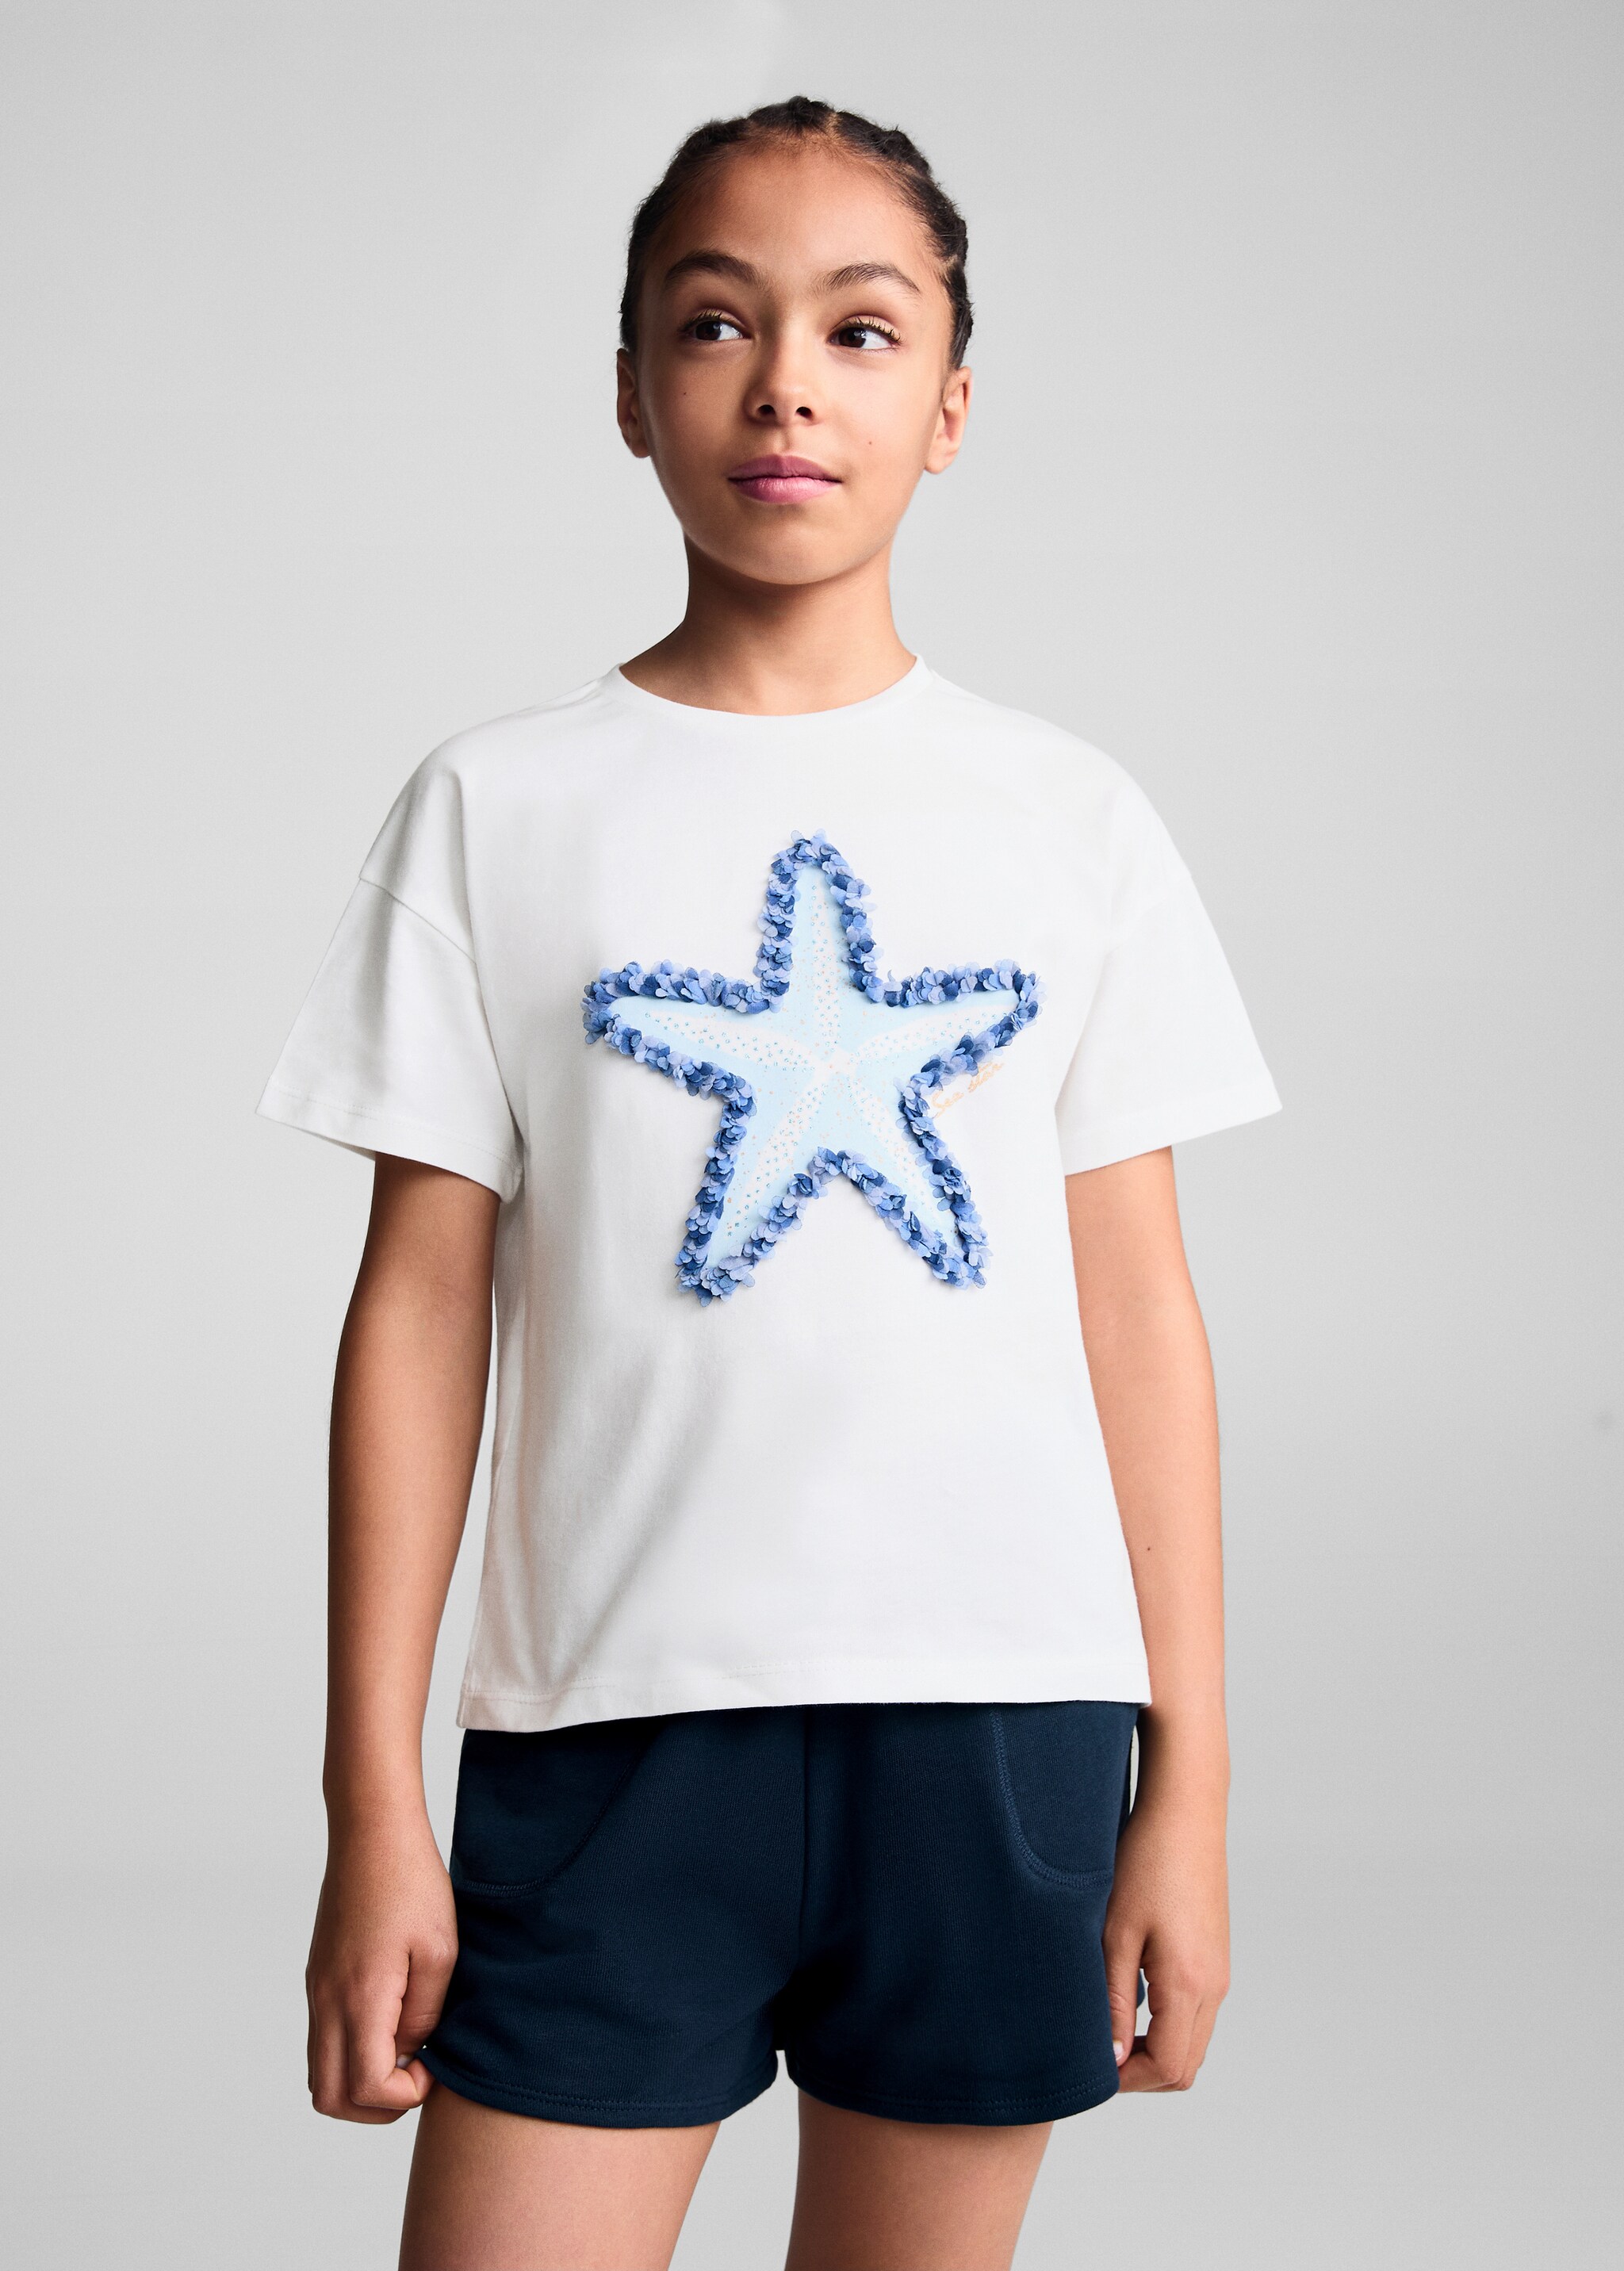 Star Print T-shirt - Medium plane